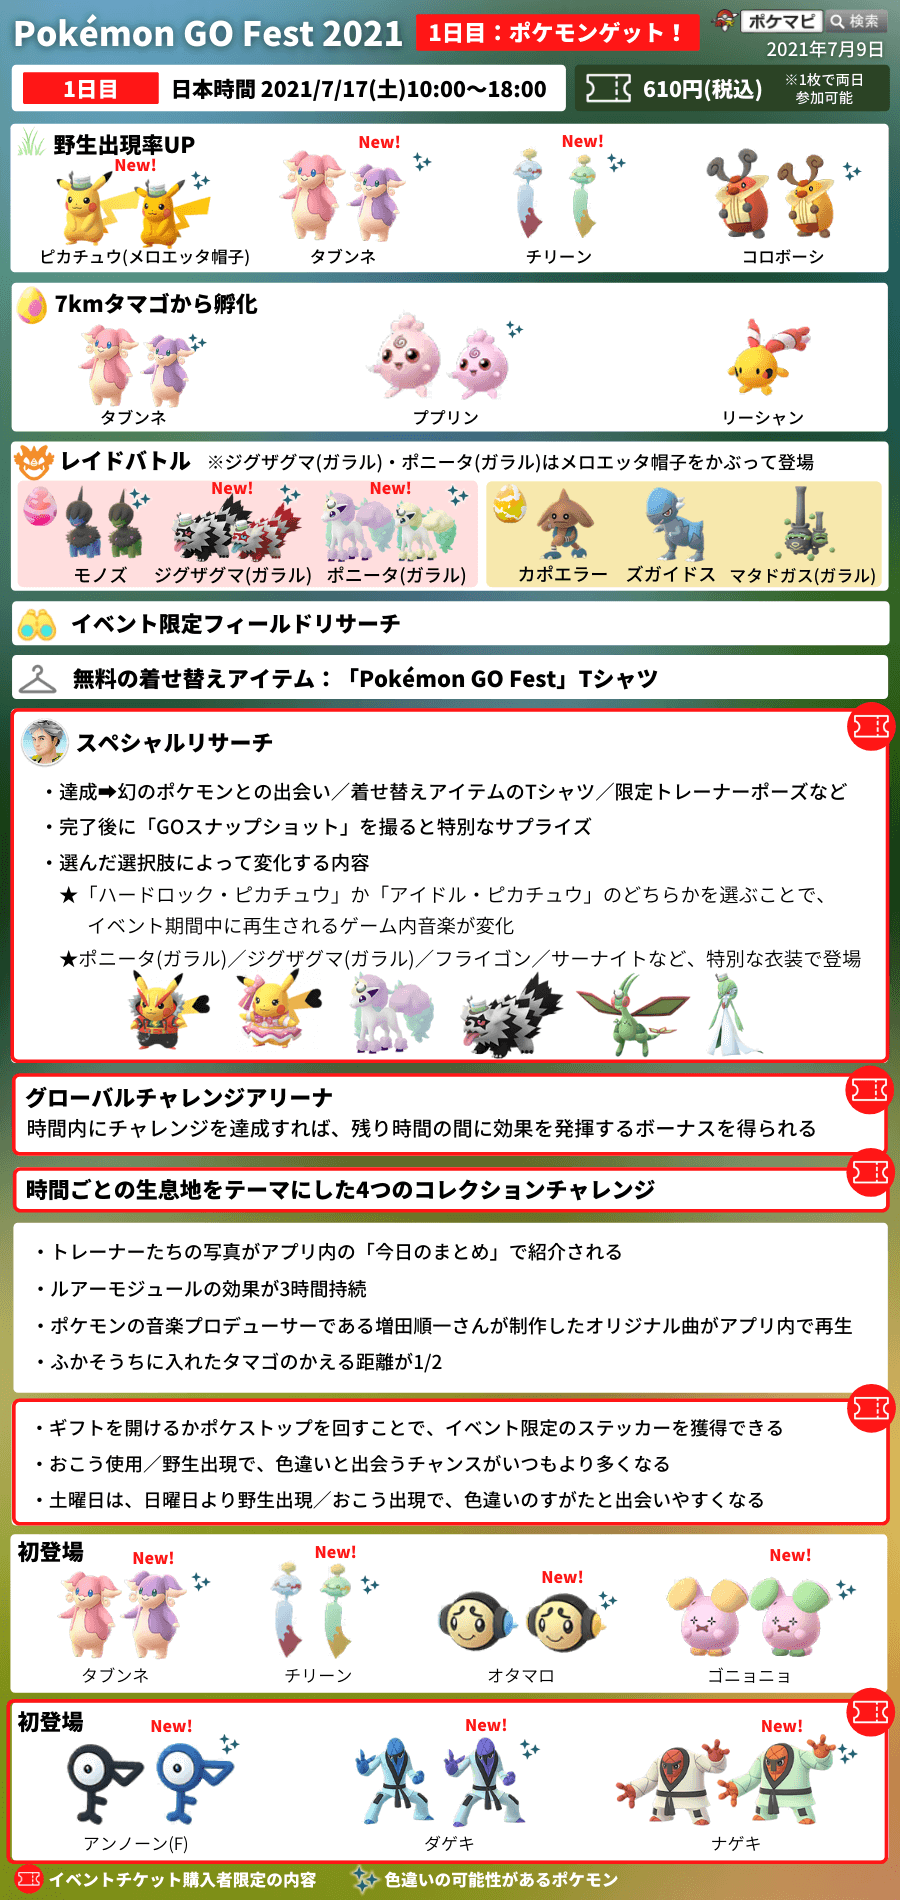 ポケモンgo Pokemon Go Fest 21 ポケモンgoフェスト21 1日目 ポケモンゲット